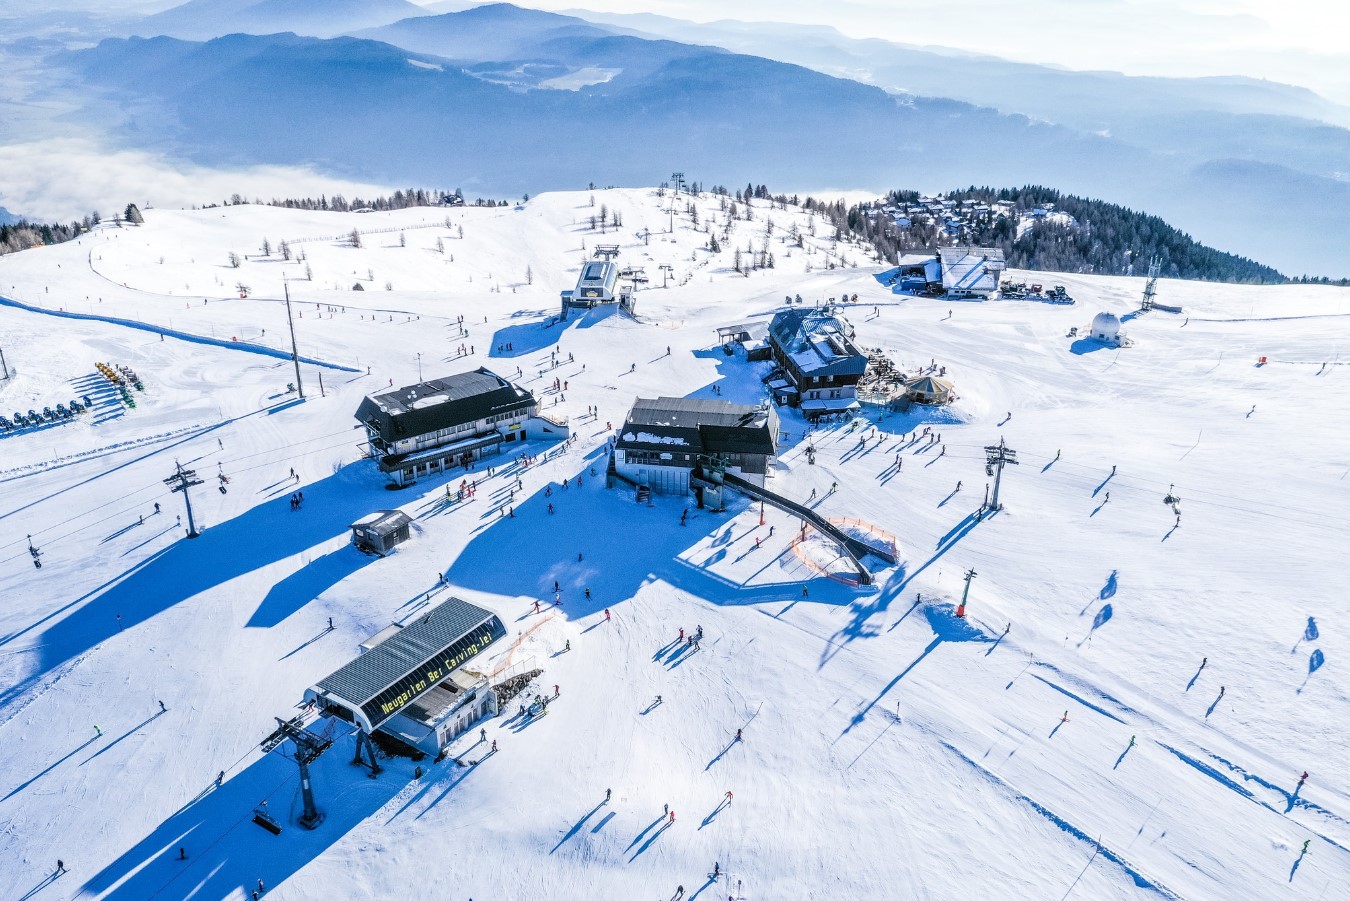 Gerlitzen Ski Resort Austria